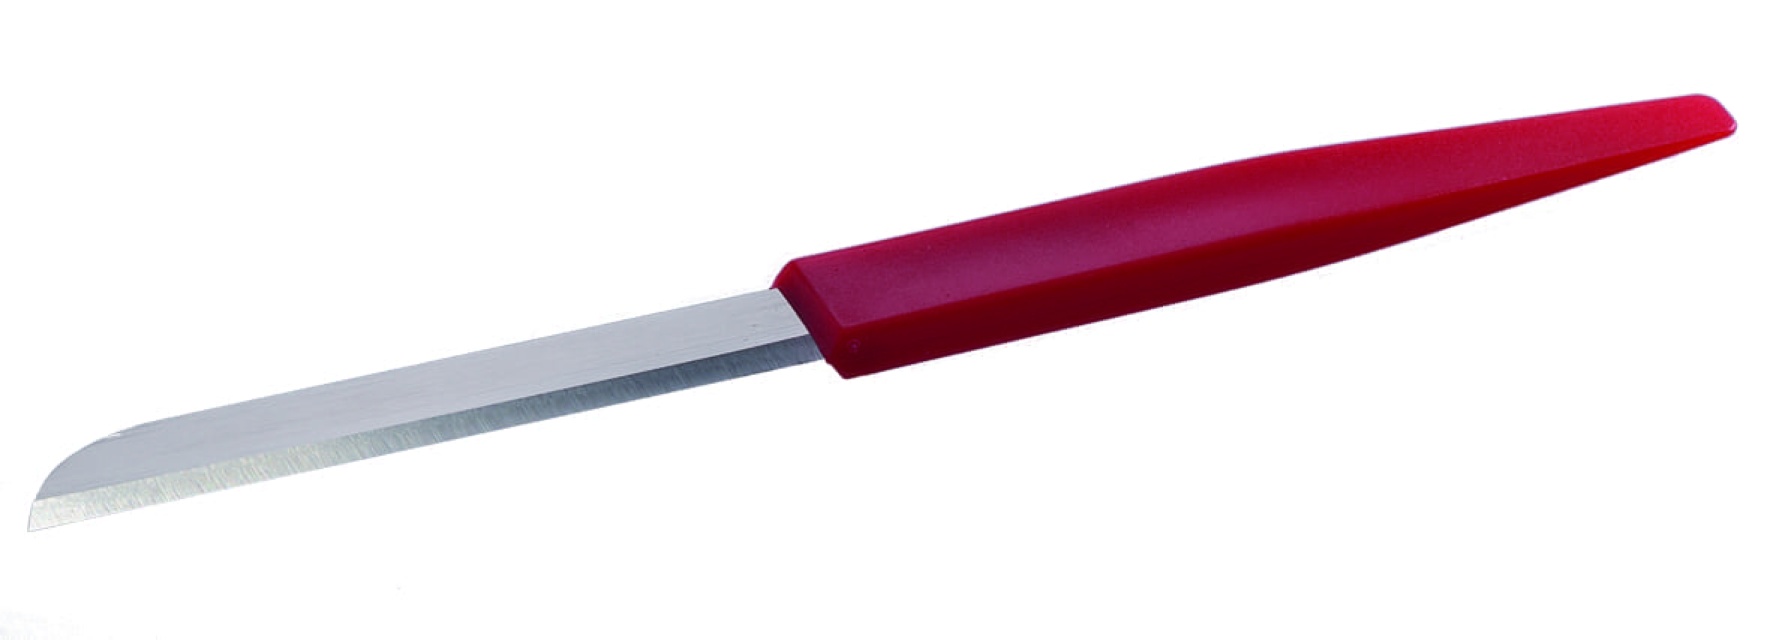 Deigkniv / skjærekniv, forskjellige størrelser - Martellato